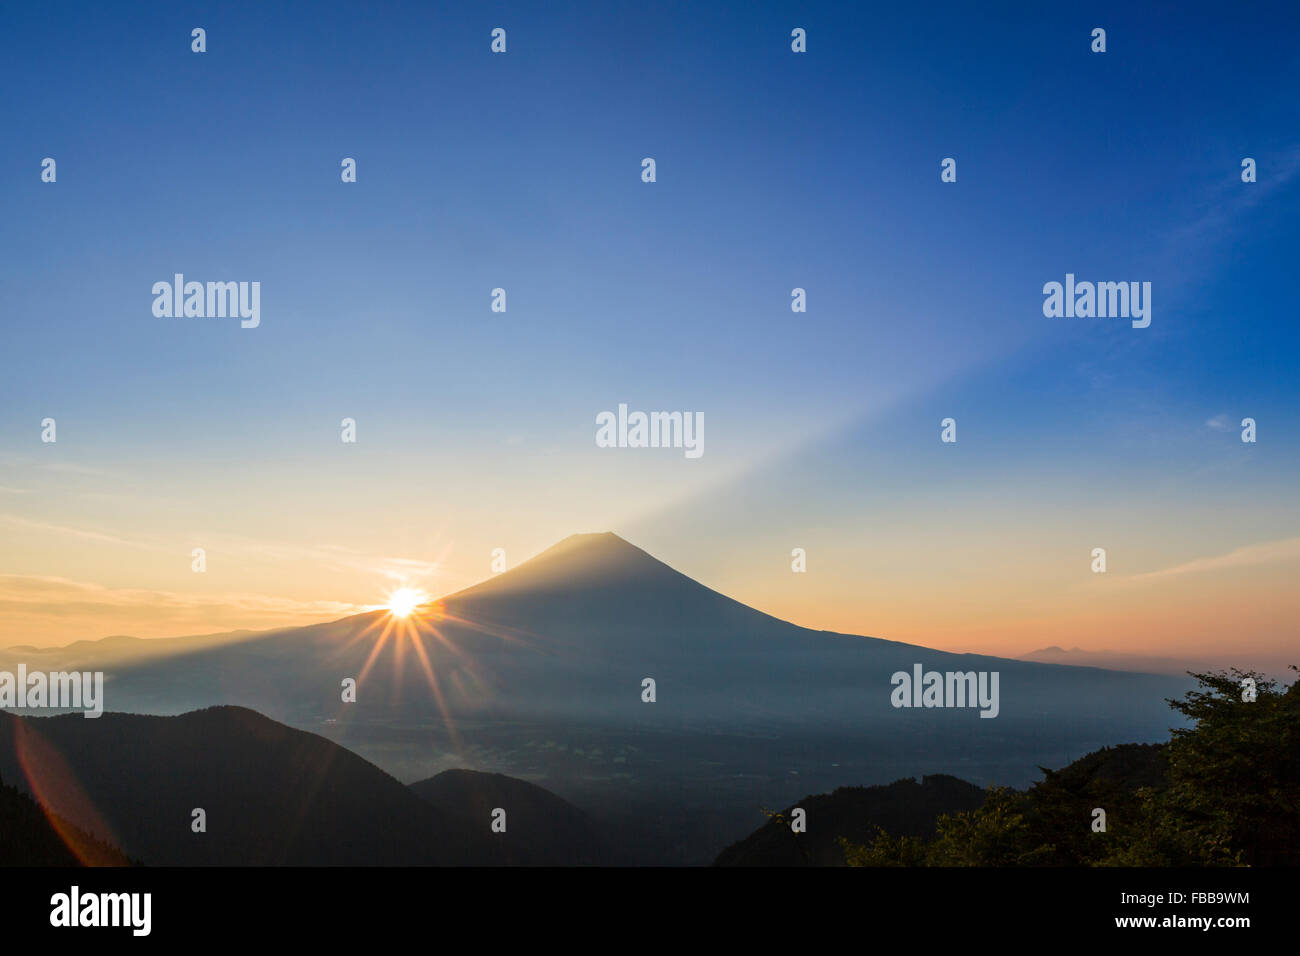 Silhouette des Mount Fuji, Fujinomiya, Shizuoka, Japan Stockfoto